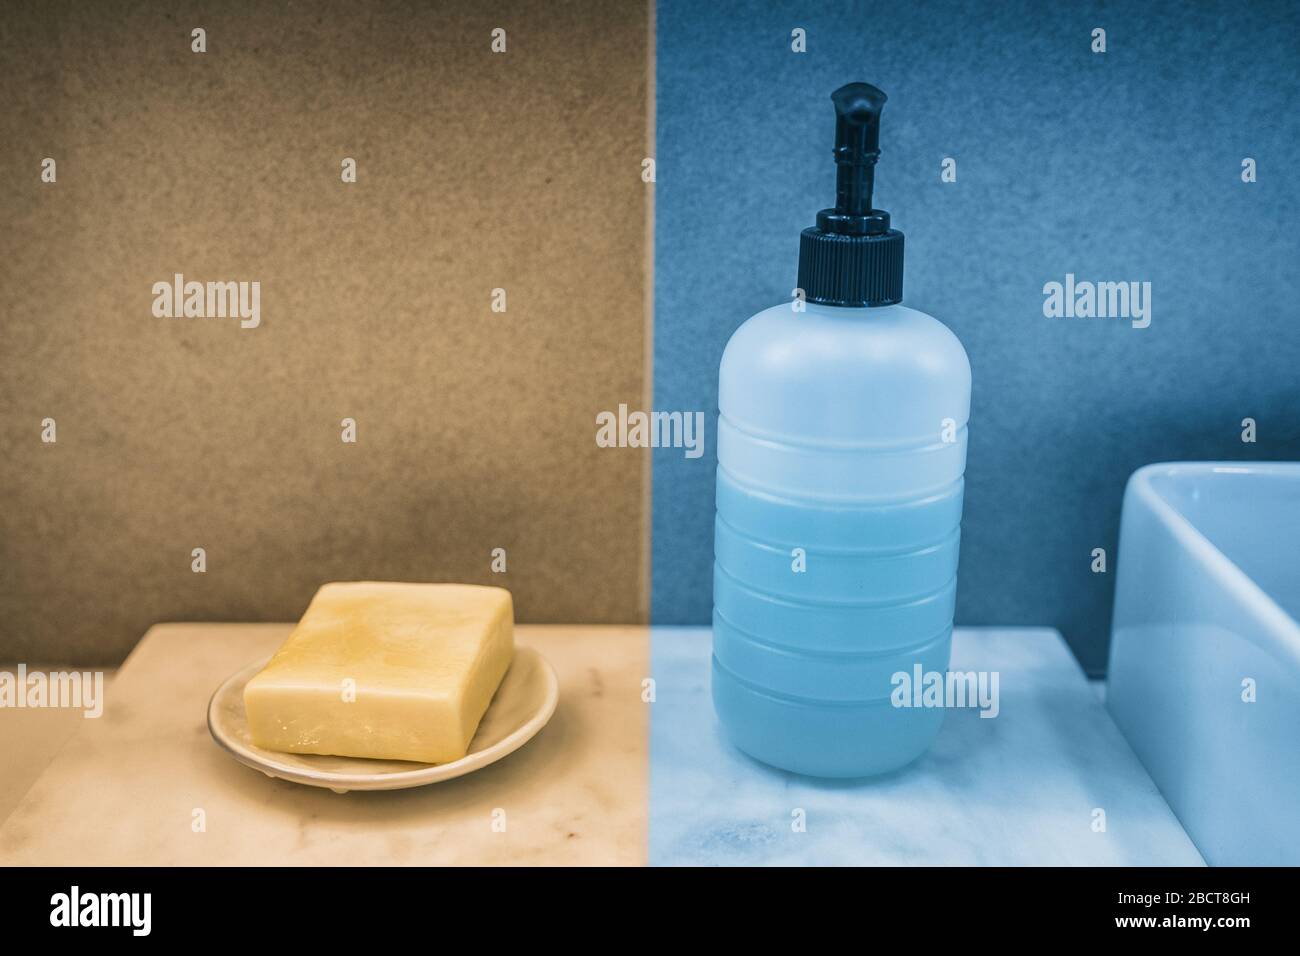 Savon-bar contre savon liquide pour les mains comparaison des produits de lavage des mains sur la meuble-lavabo de la salle de bains à la maison. Boîtes de couleur jaune et bleue à comparer. Banque D'Images